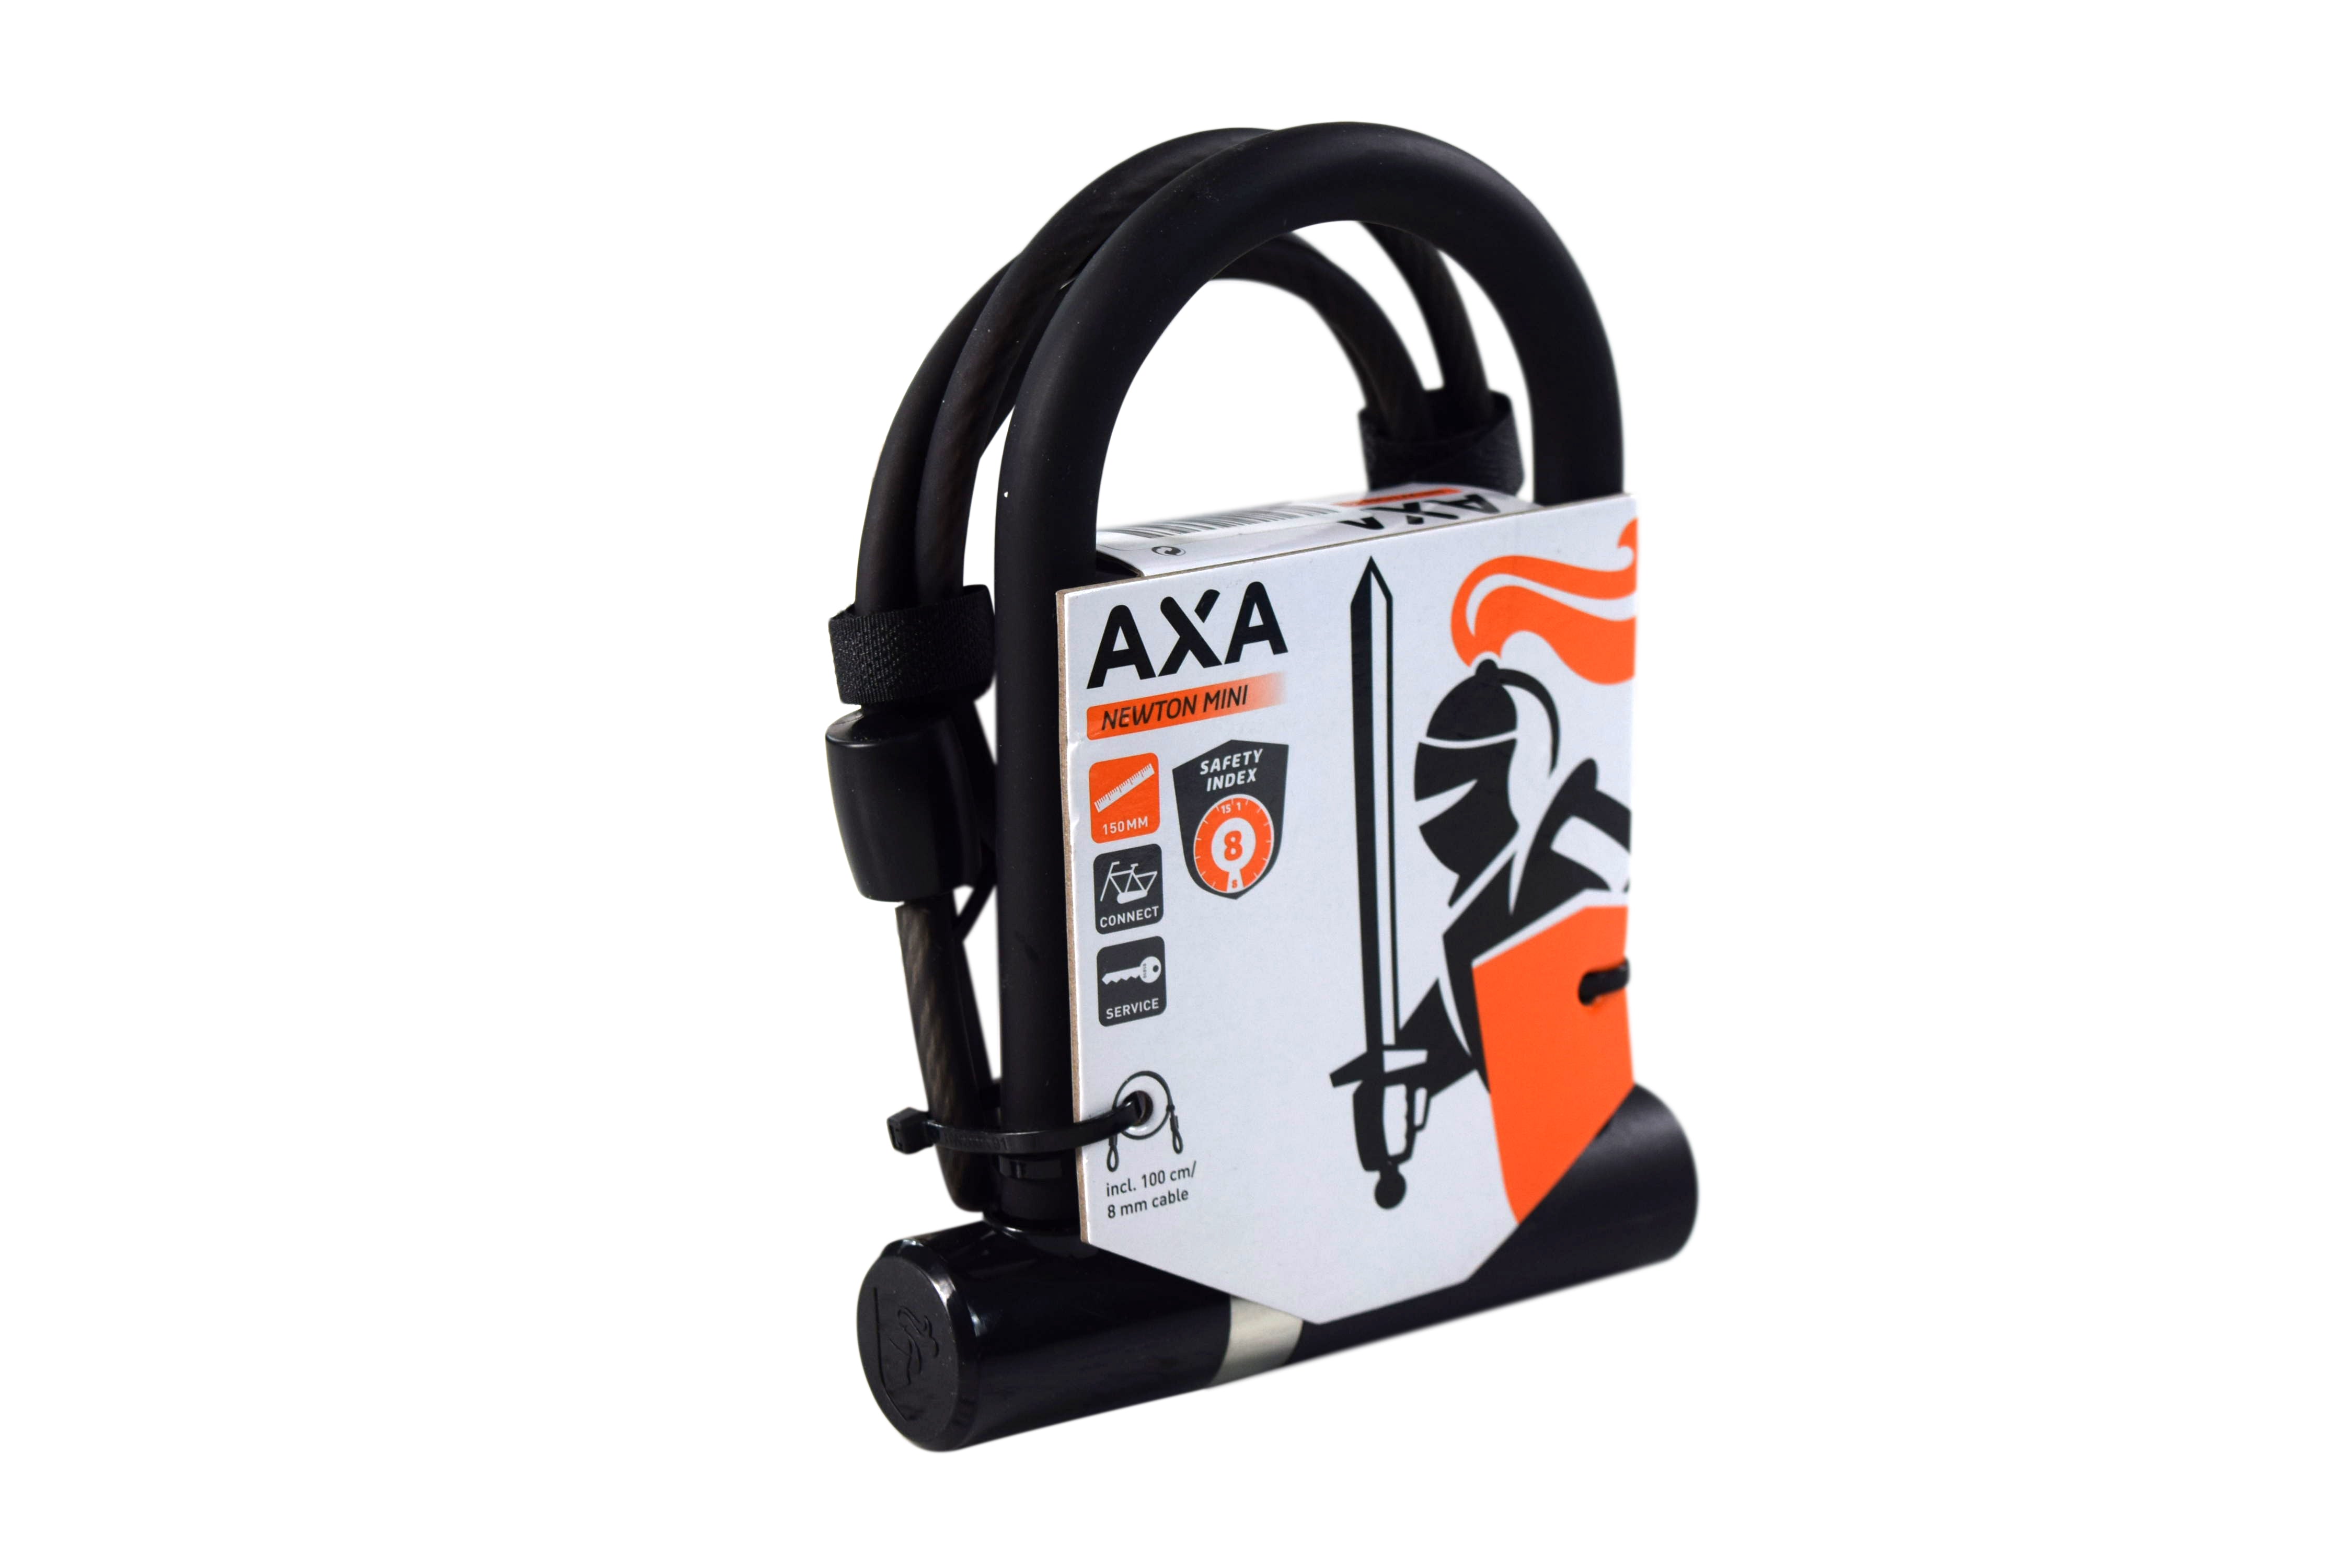 AXA-005155-Newton-Mini-Cable-100-8-image-3